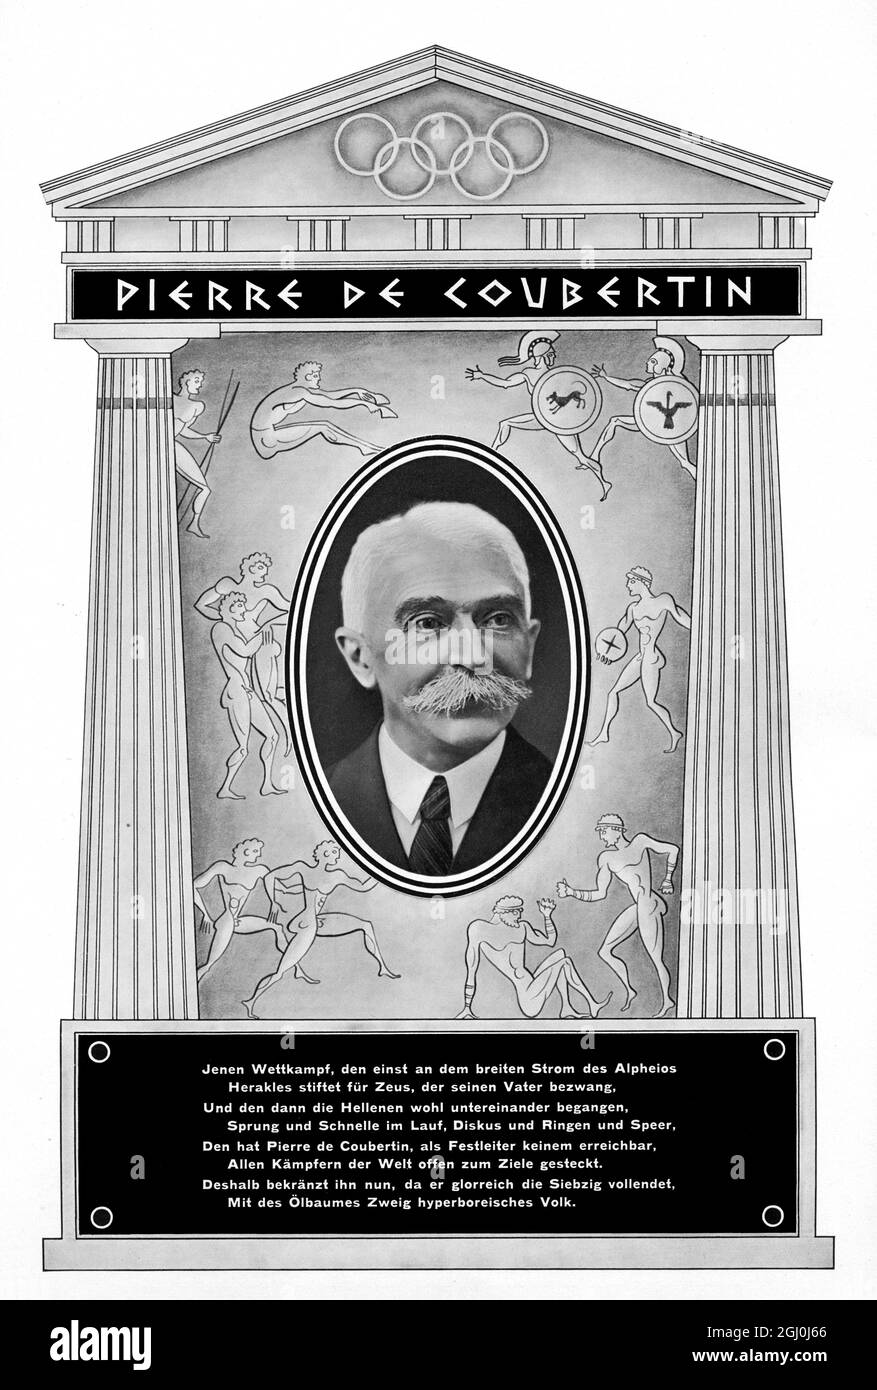 Pierre de Coubertin - Pierre de Frédy, Baron de Coubertin (1. Januar 1863 - 2. September 1937) war ein französischer Pädagoge und Historiker, der vor allem dafür bekannt war, die Olympischen Spiele der Moderne zu begründen. ©TopFoto Stockfoto